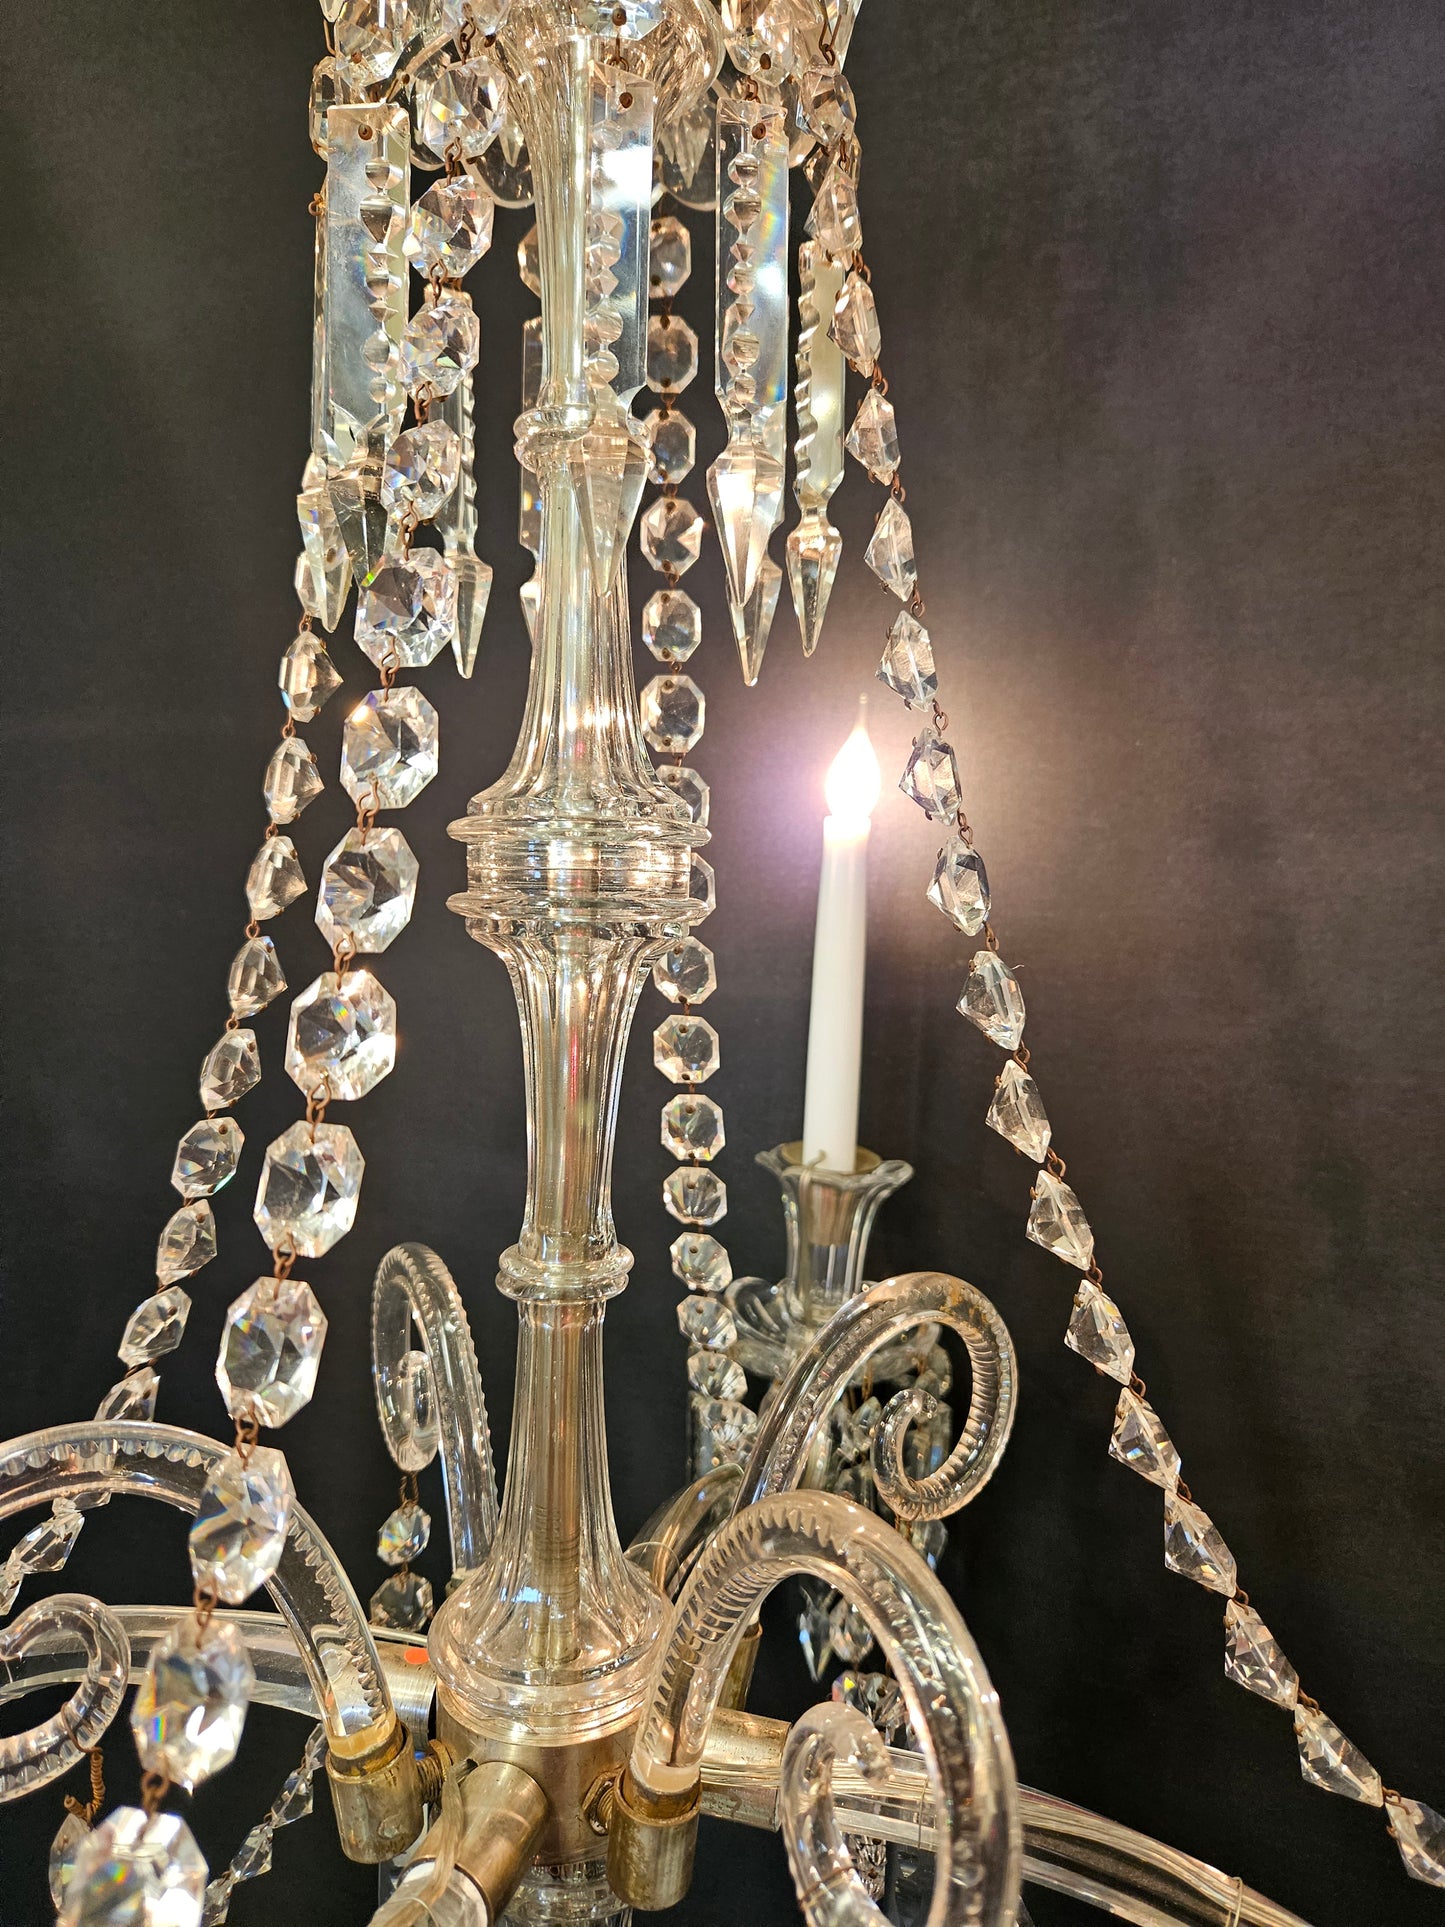 4-Arm Victorian Glass Chandelier, CA. 1840